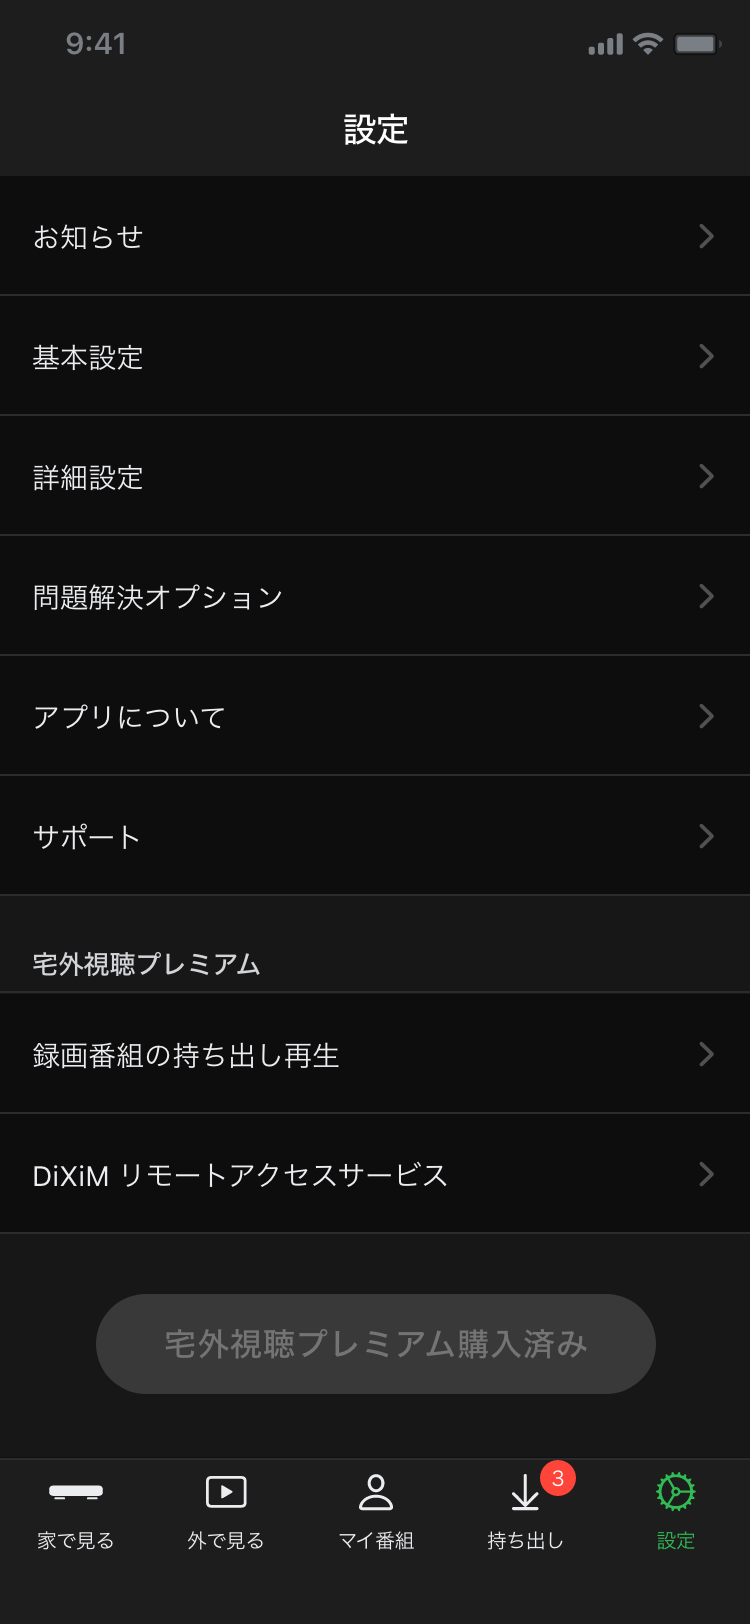 DiXiM Digital TV for iOS 設定